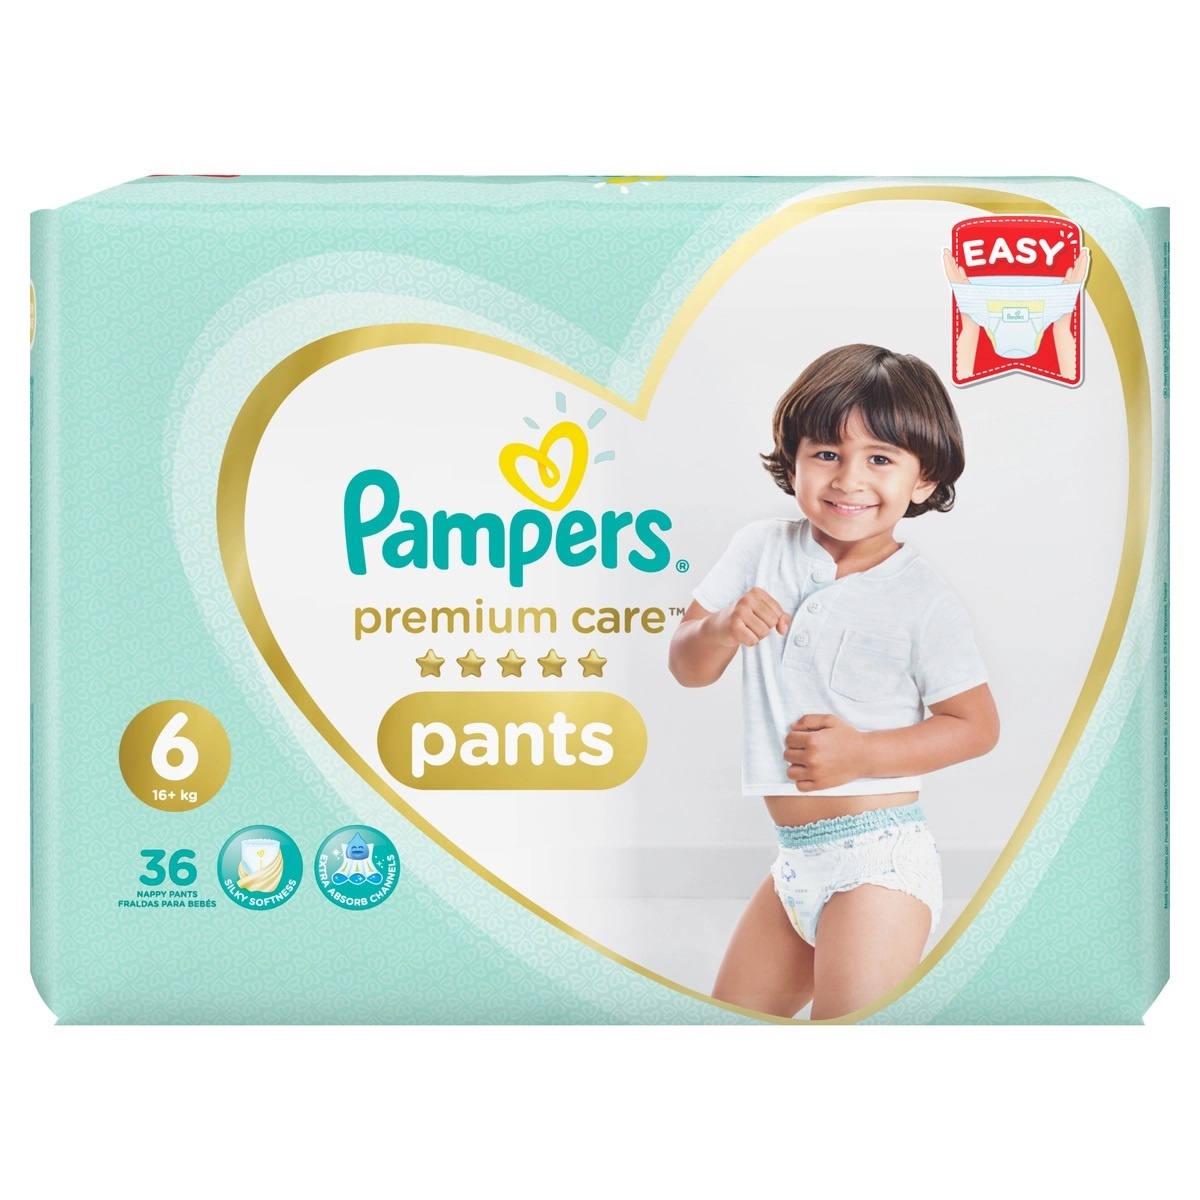 Pampers Pants size 6, 15+ kg diaper panties 36 pcs - VMD parfumerie -  drogerie